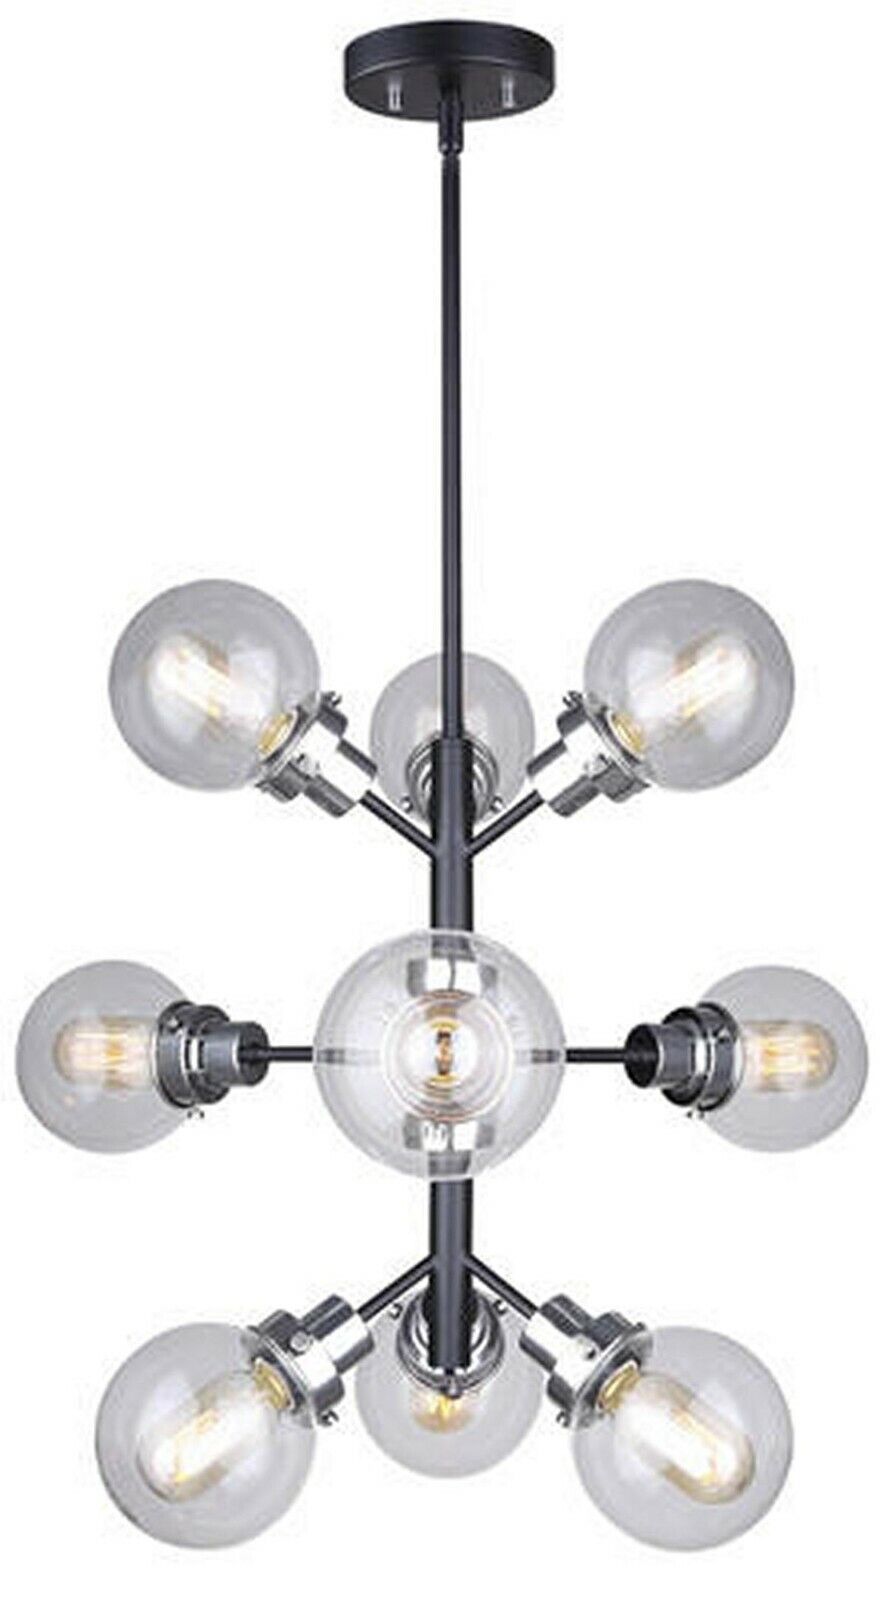 New - Modern Sputnik 9-Light Chandelier Ceiling Lamp Light Fixture with Bulbs